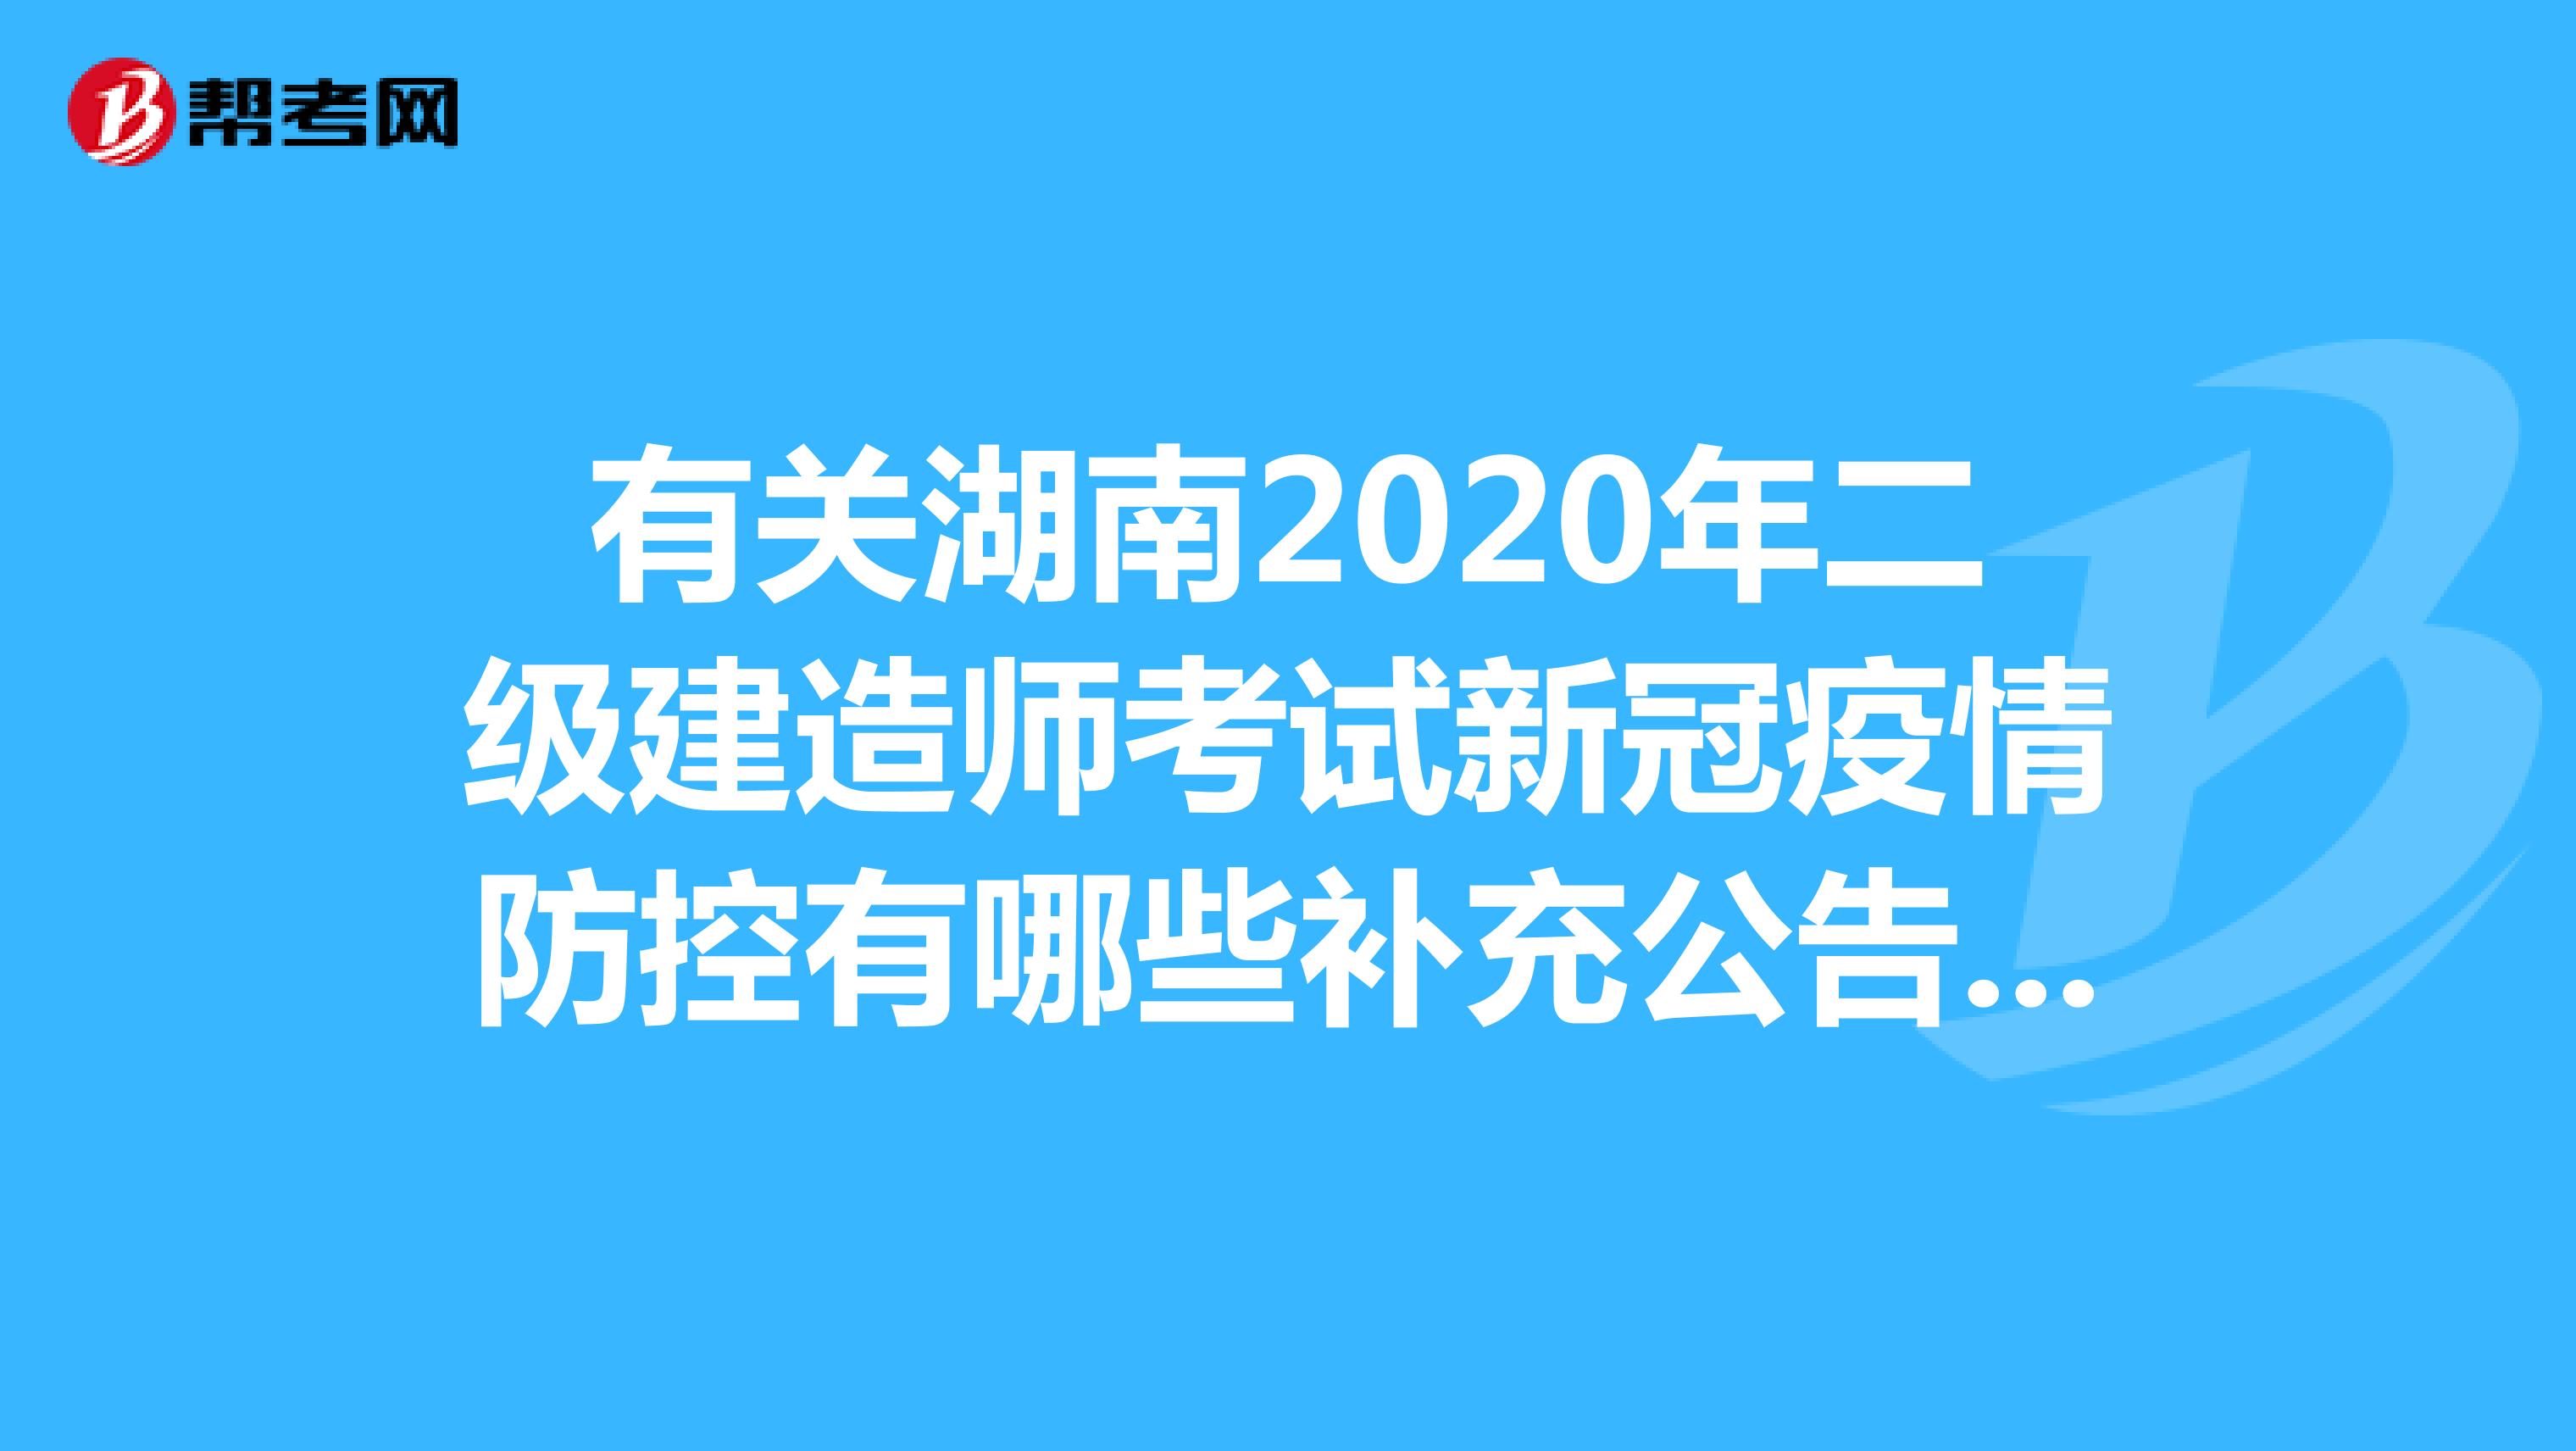 有关湖南2020年二级建造师考试新冠疫情防控有哪些补充公告呢？